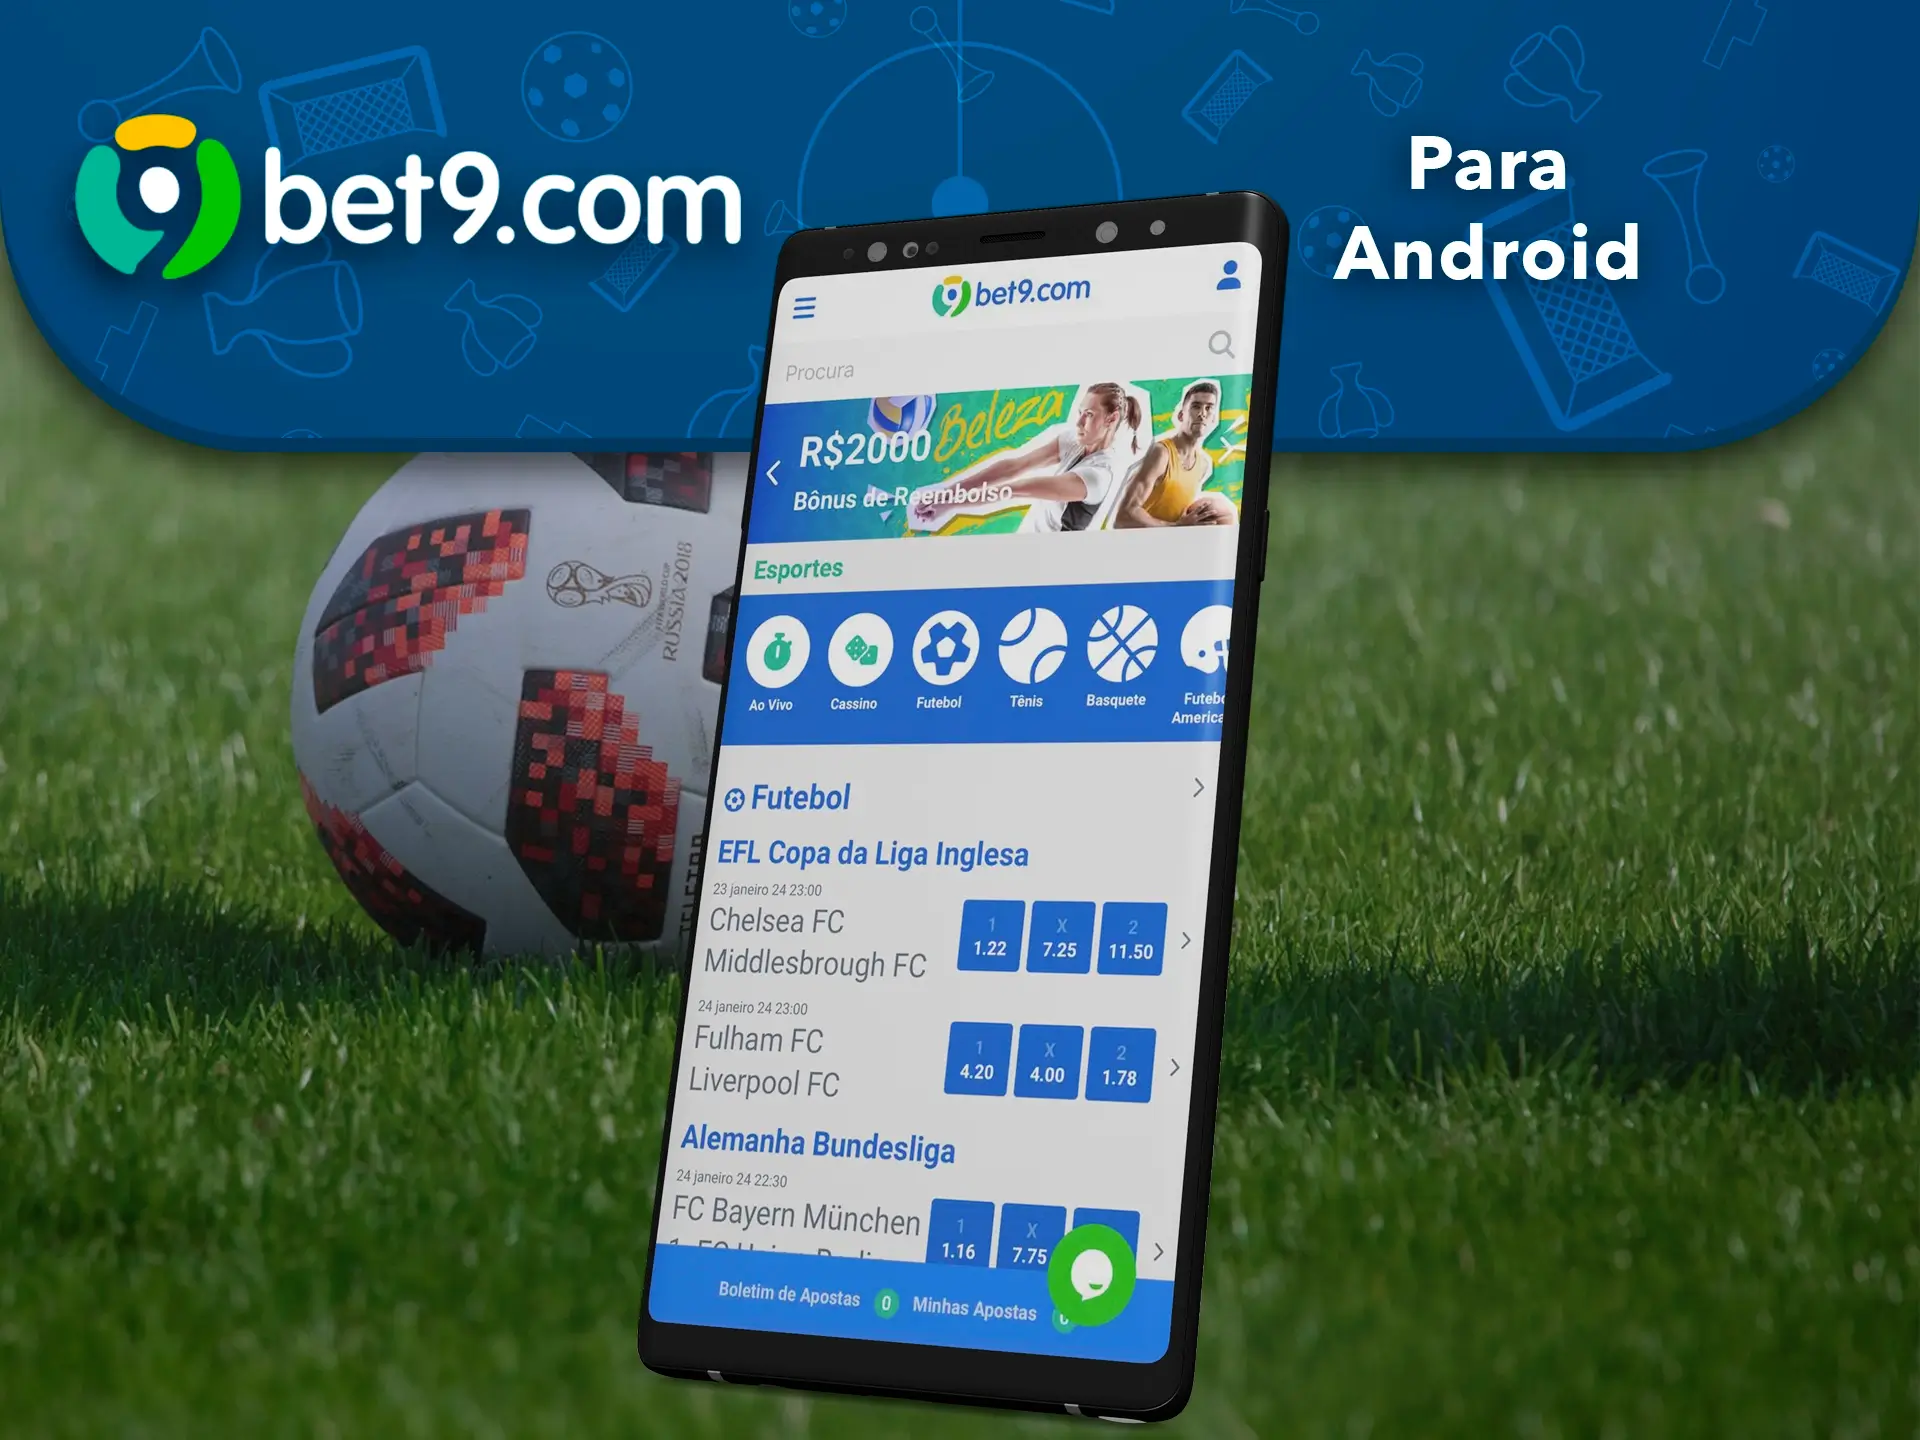 Transfira a aplicação Bet9 para Android para obter todas as funcionalidades do site a partir de qualquer lugar.